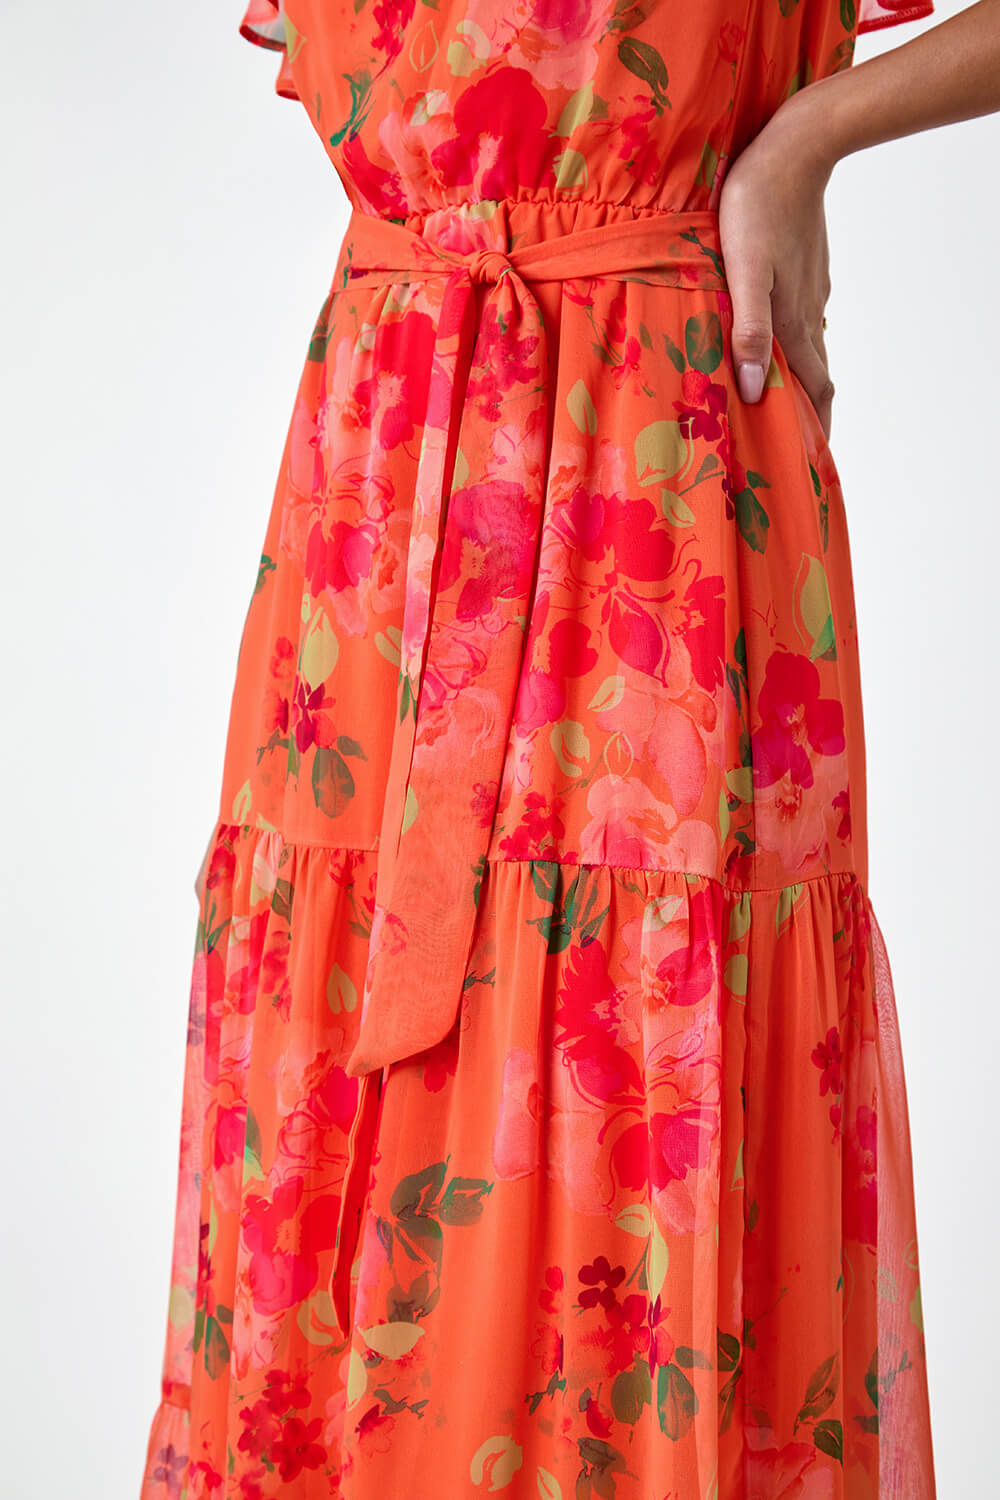 ORANGE Floral Tiered Bardot Belted Dress, Image 5 of 5